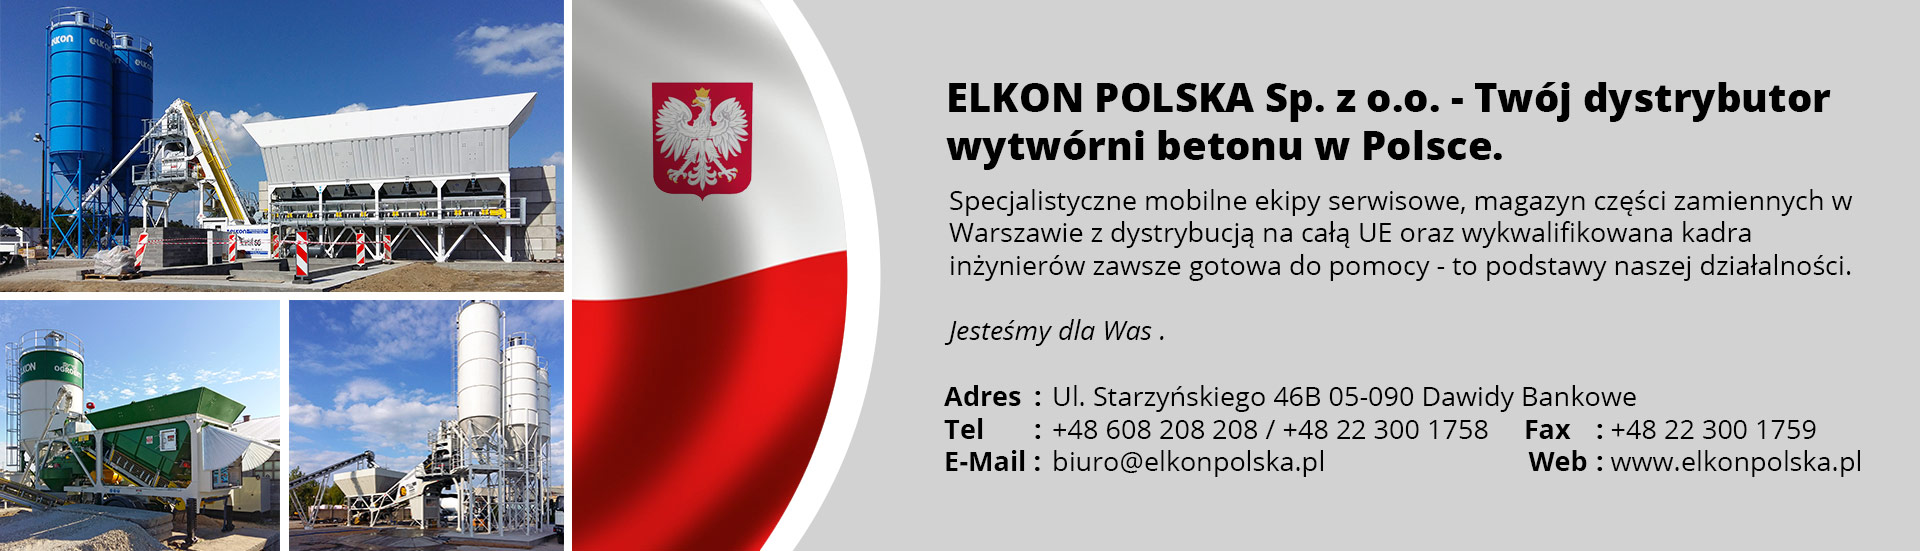 ELKON POLSKA Sp. z o.o.  - Twój dystrybutor wytwórni betonu w Polsce. 